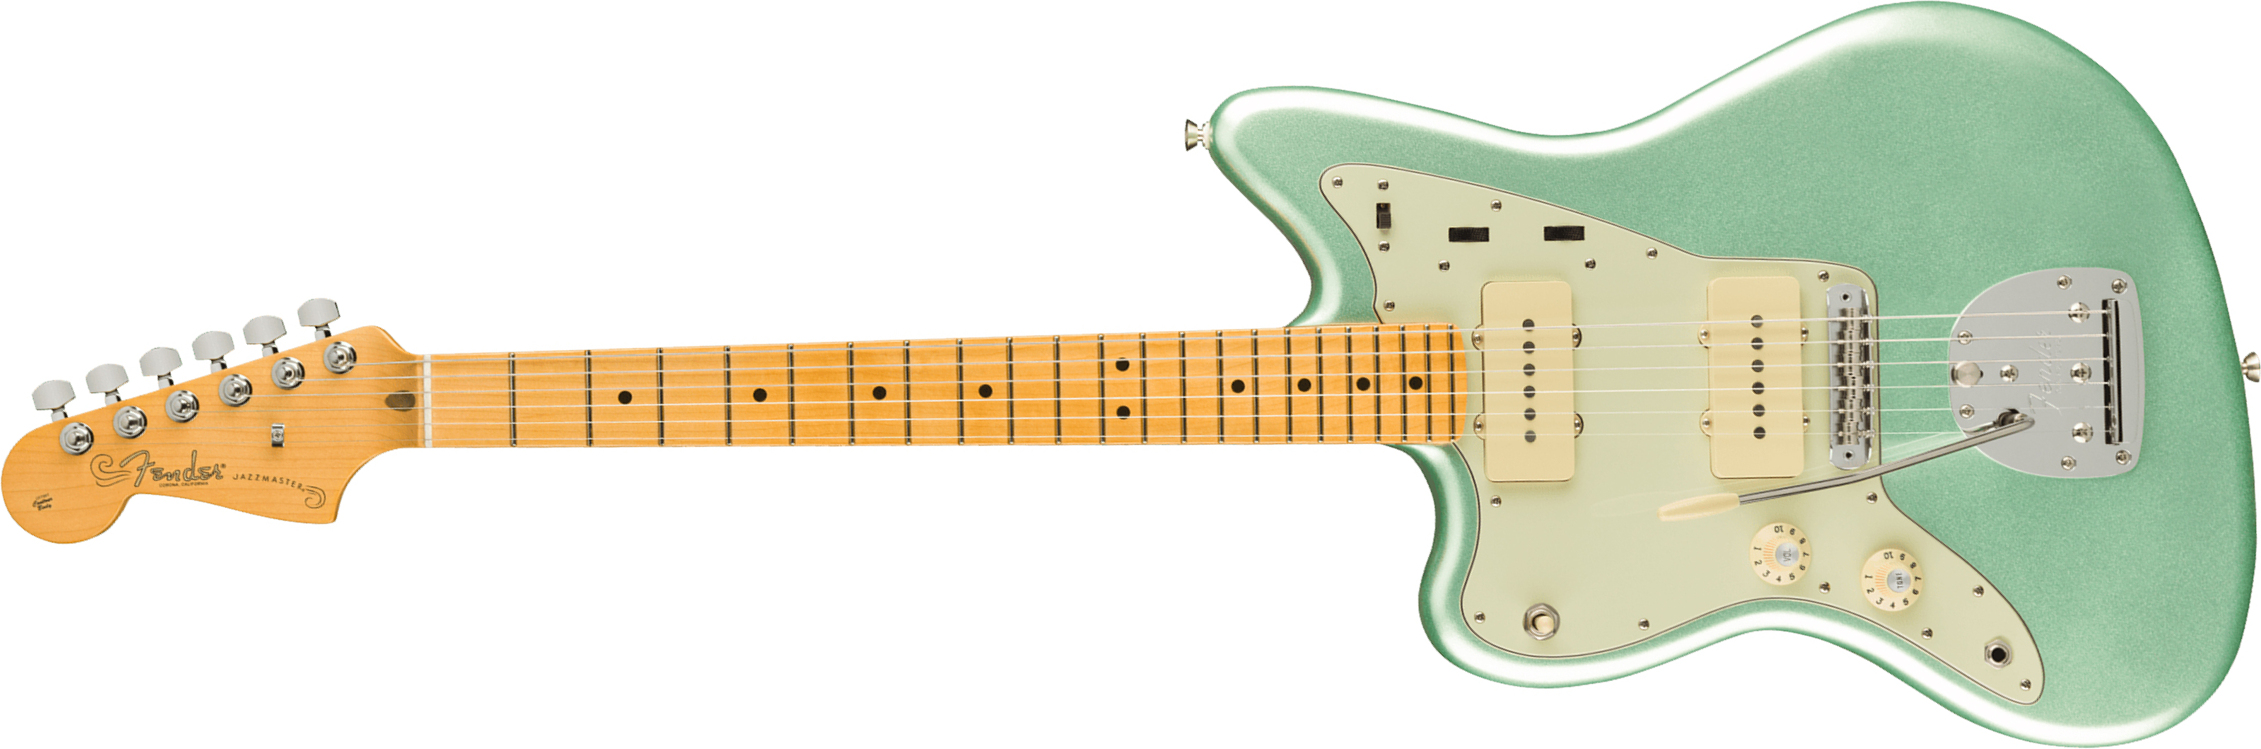 Fender Jazzmaster American Professional Ii Lh Gaucher Usa Mn - Mystic Surf Green - Guitarra electrica para zurdos - Main picture